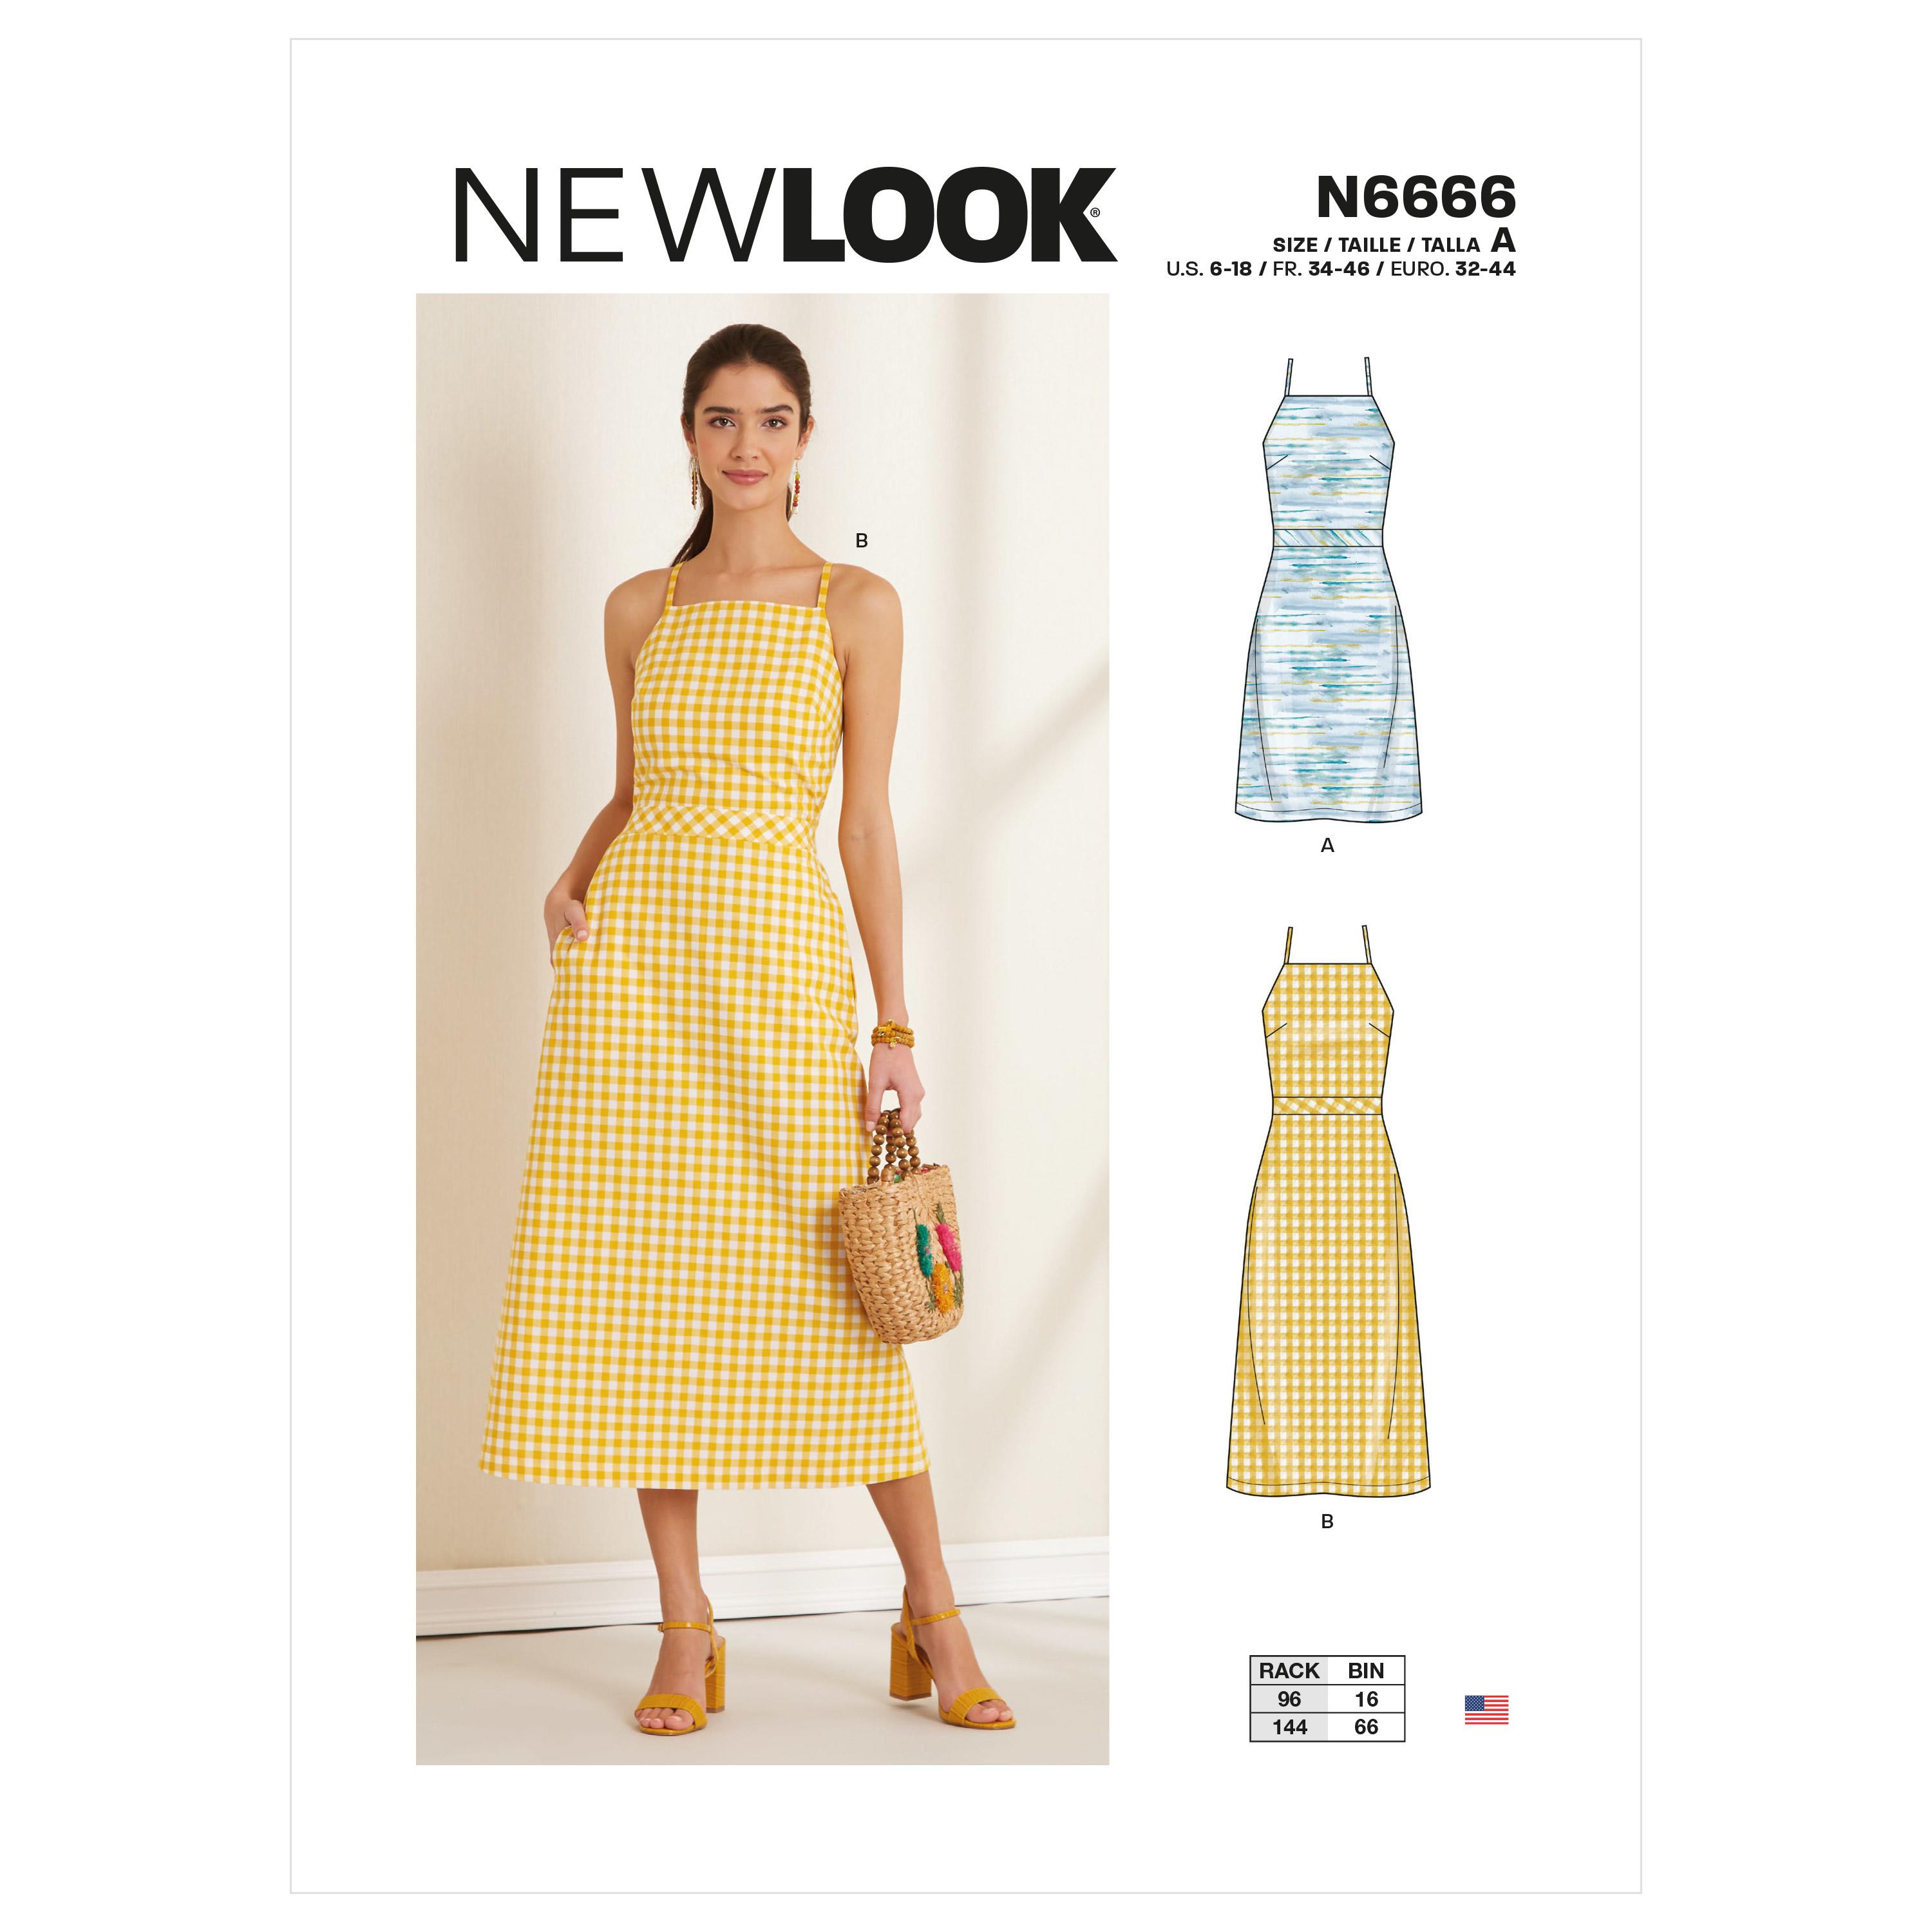 New Look Sewing Pattern N6666Misses' Dress